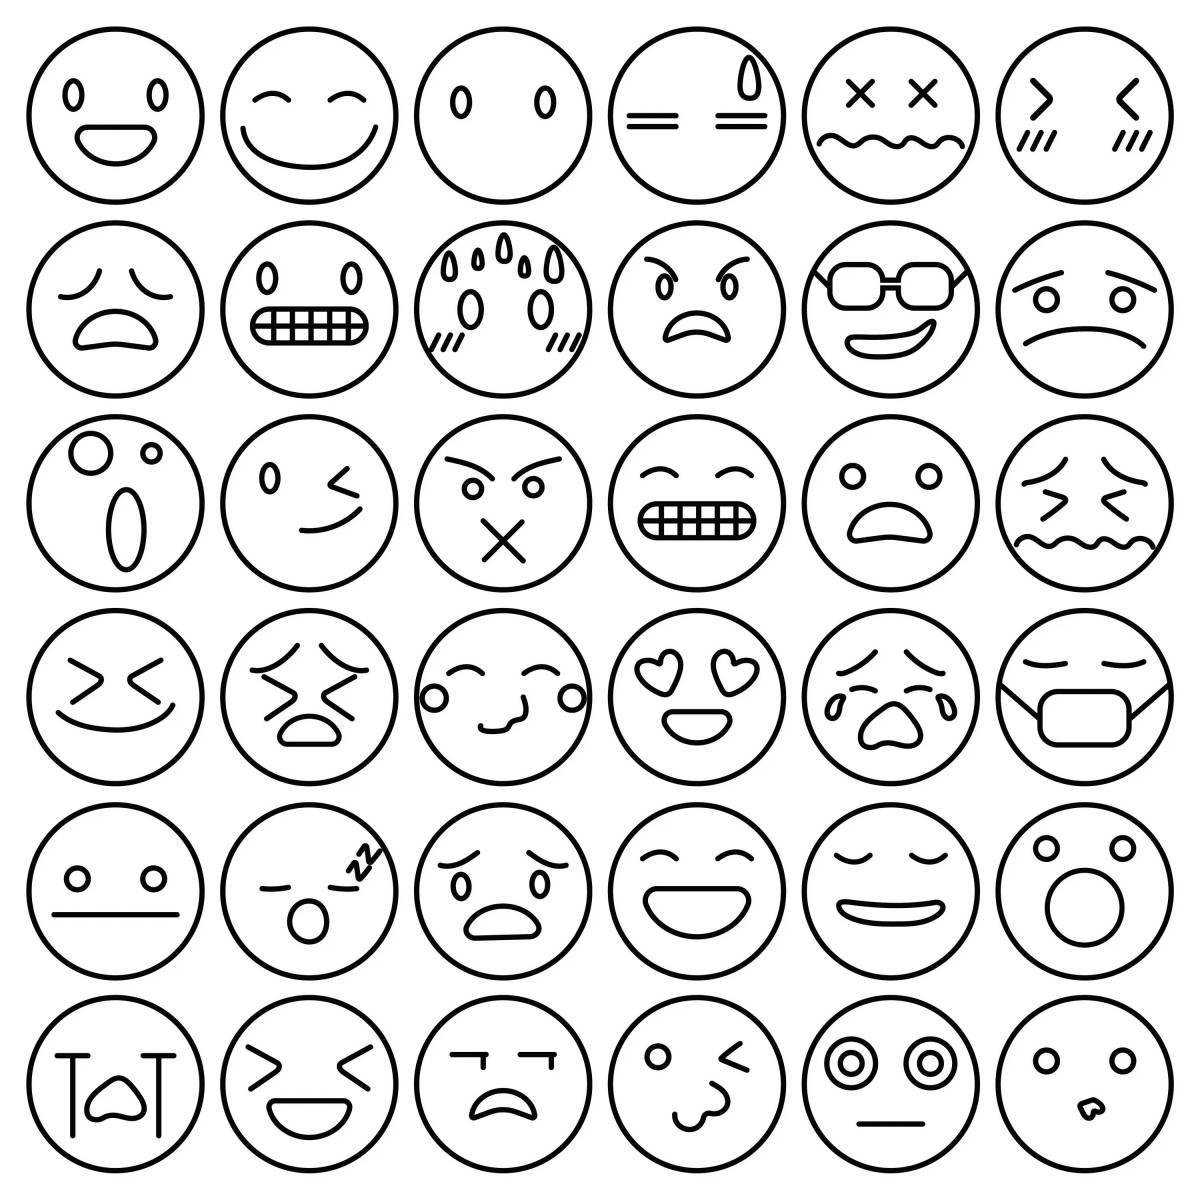 Bright emoji coloring page